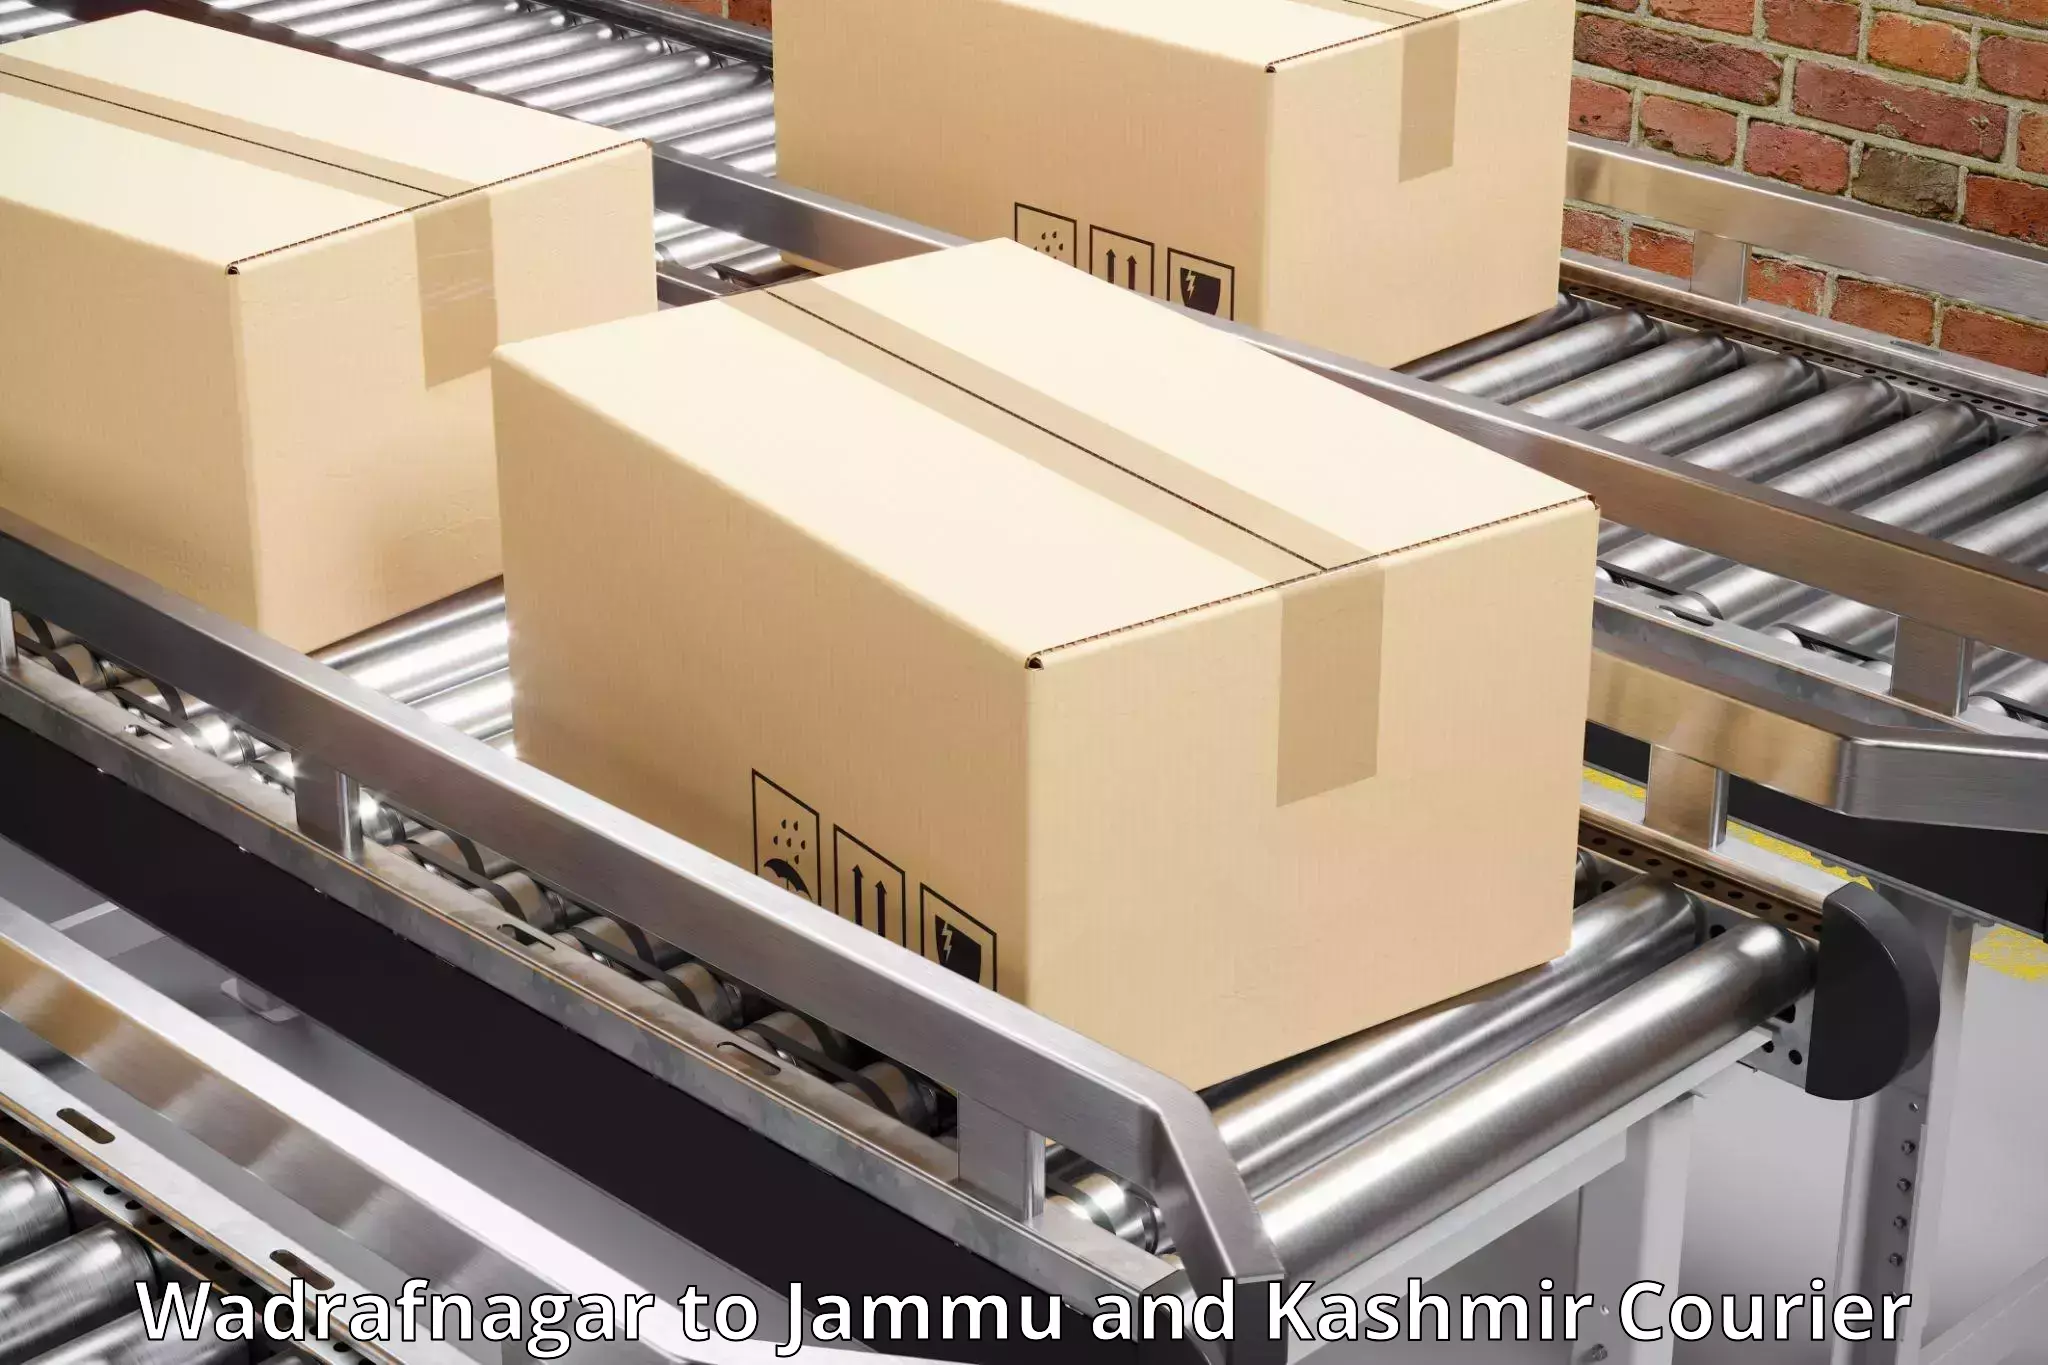 Efficient freight service in Wadrafnagar to Jammu and Kashmir